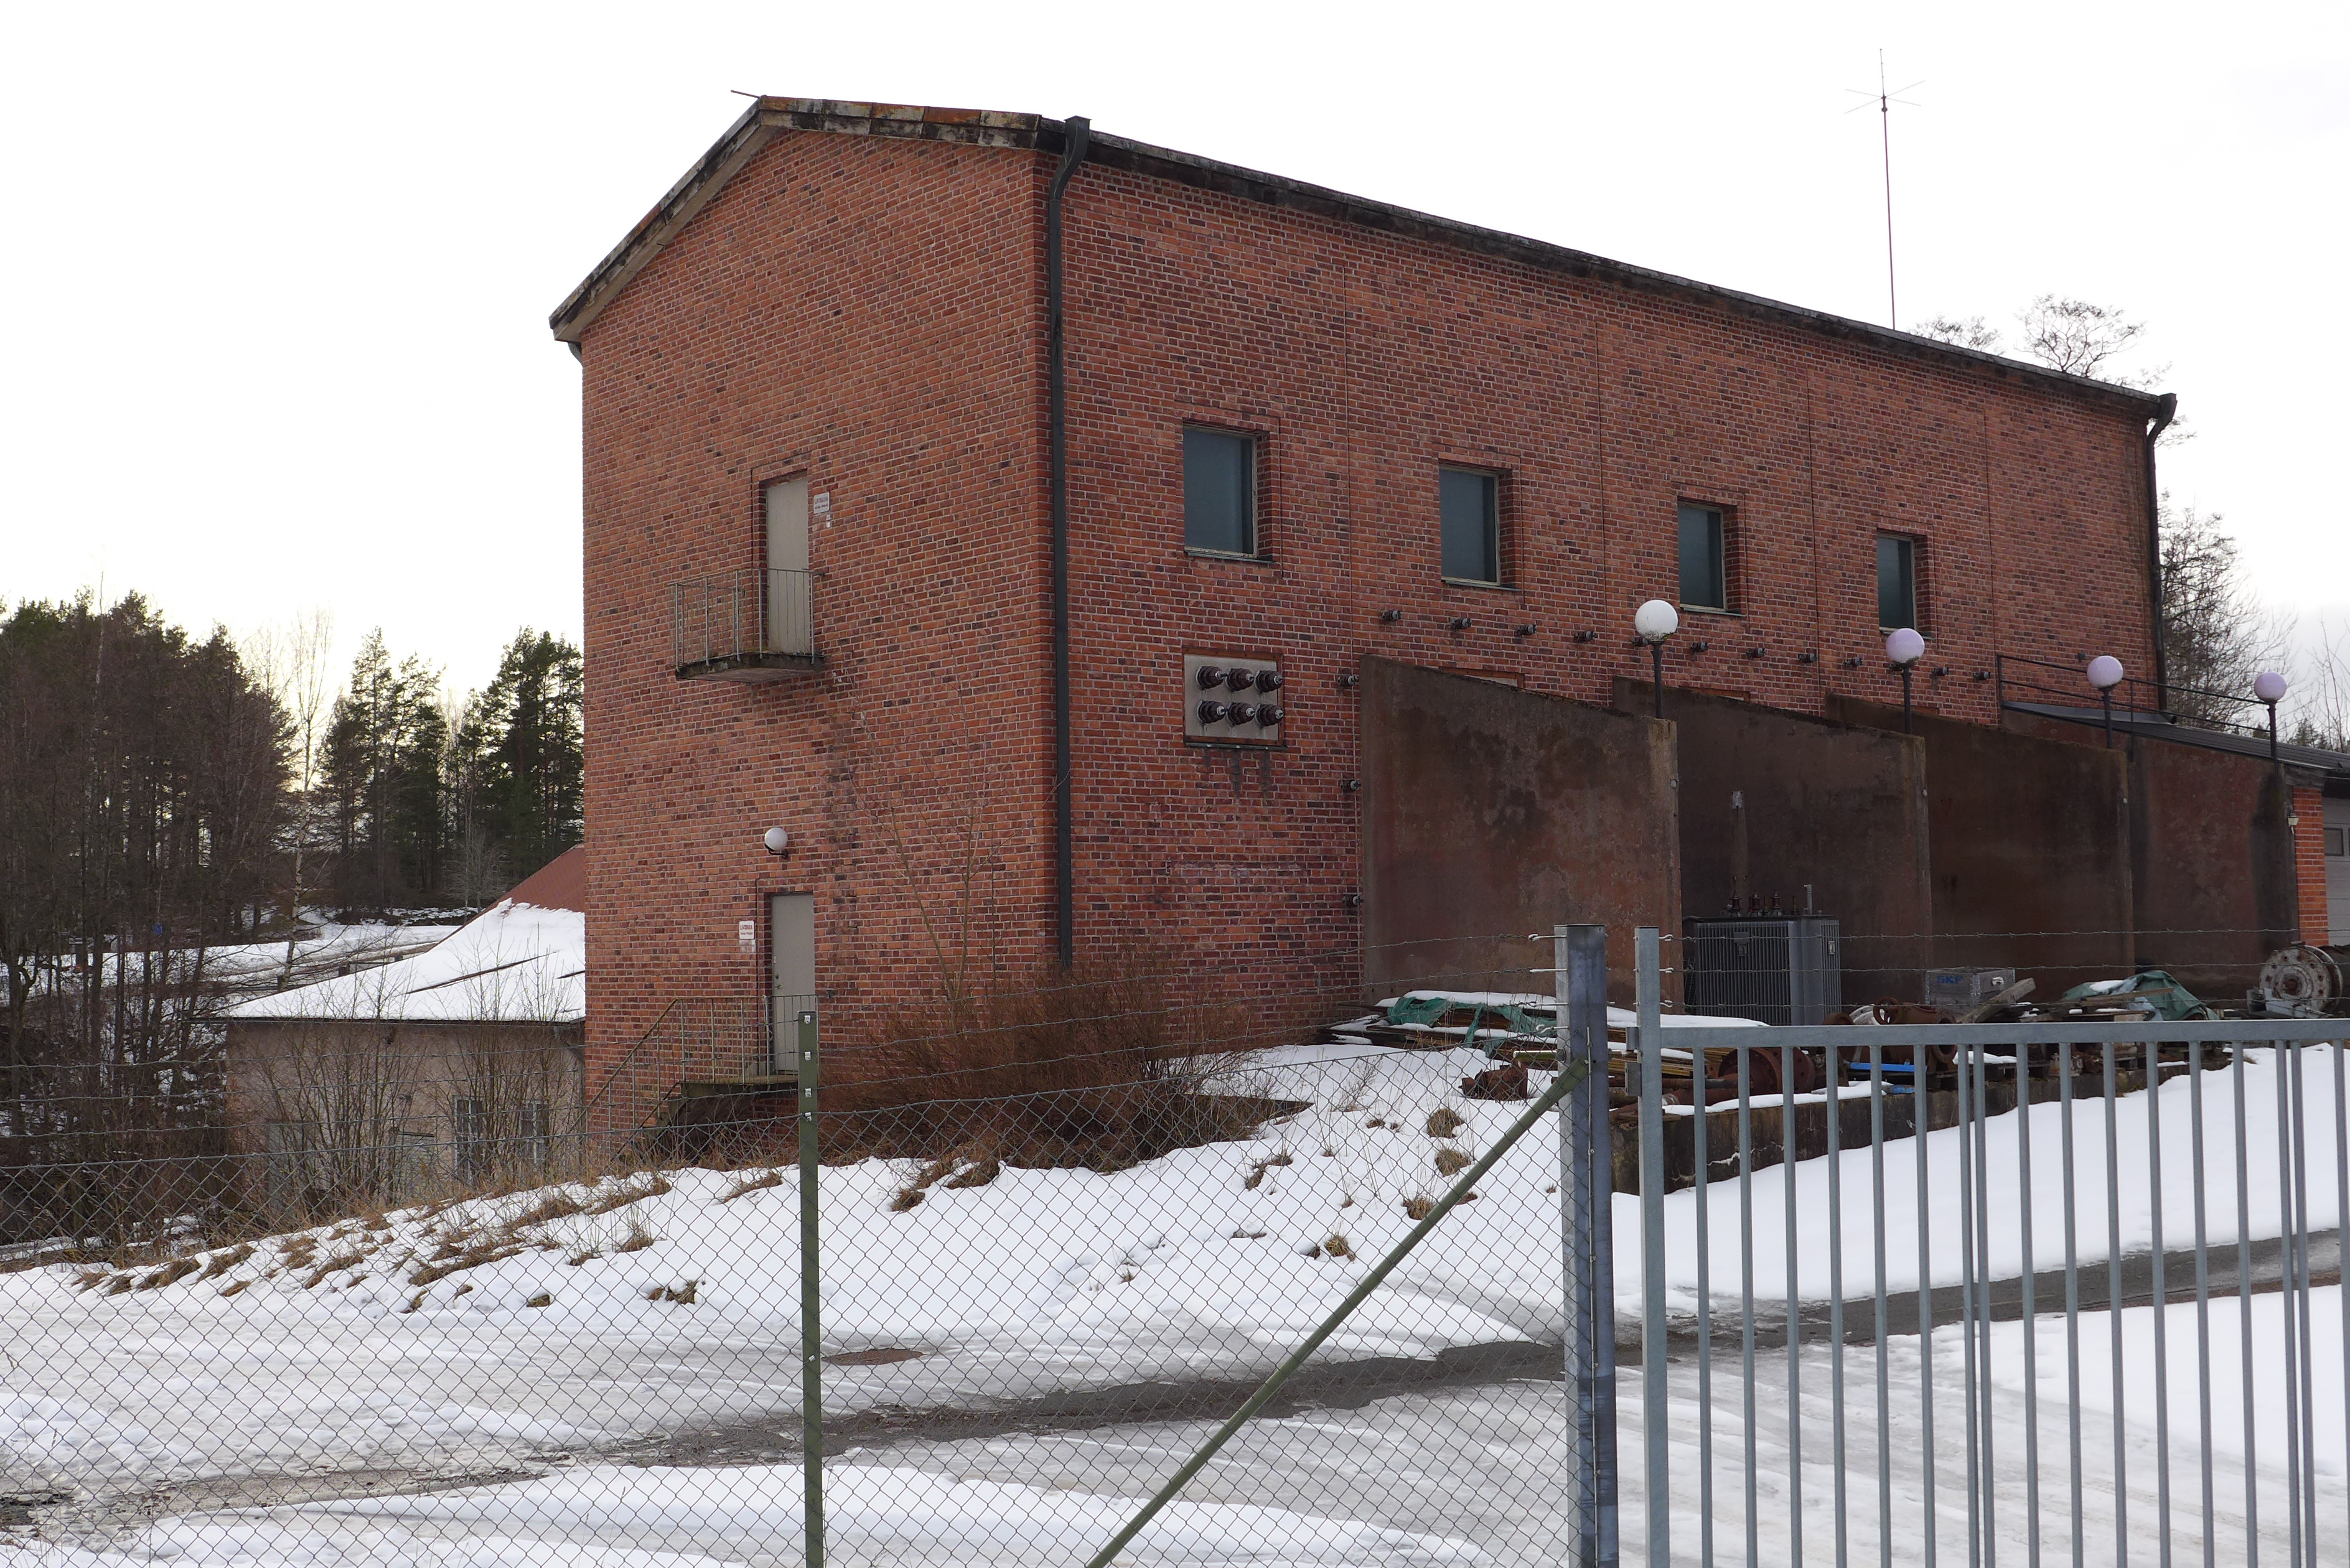 Denna del av Nygårds kraftstation uppfördes för att inrymma ställverk och utledningsutrustning.
